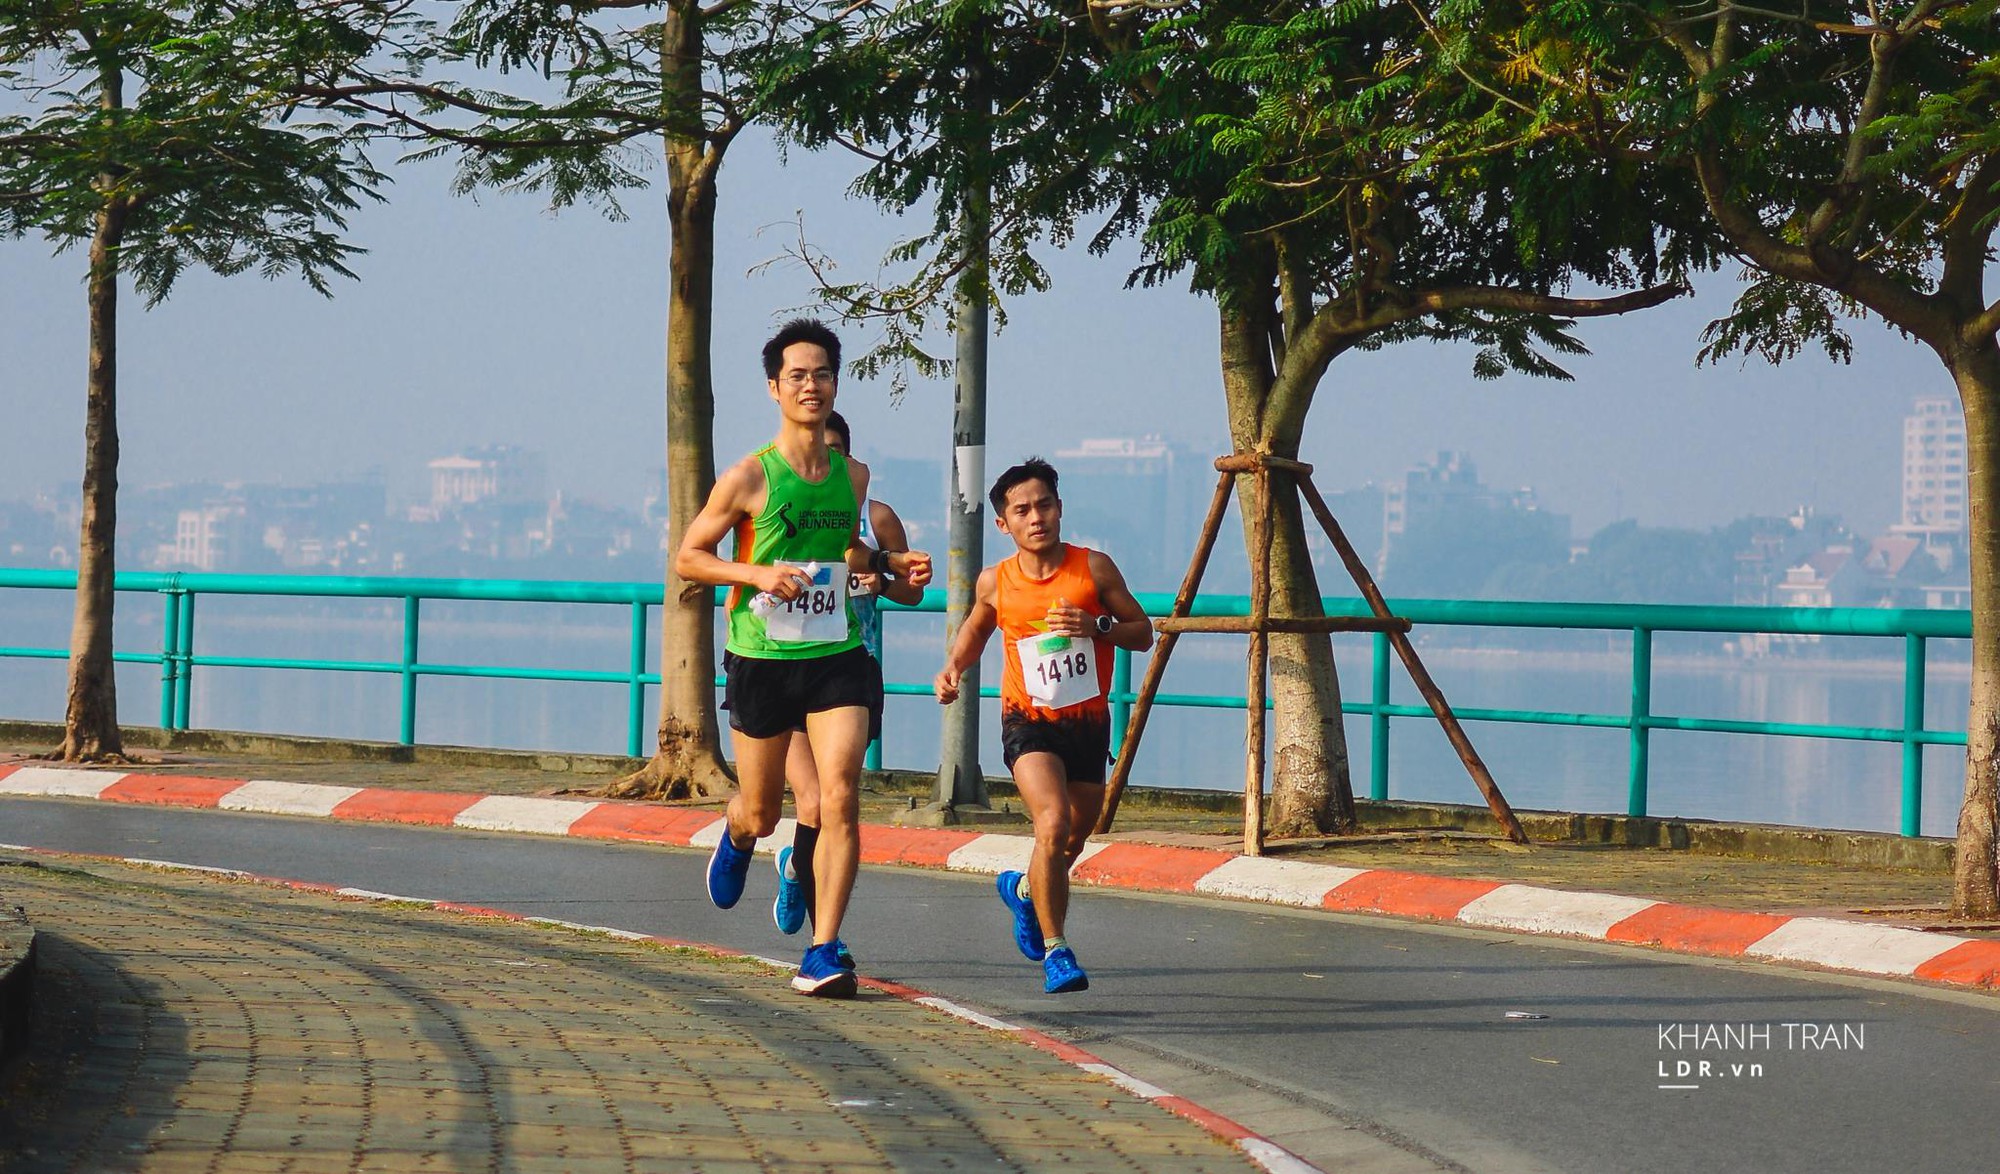 VĐV Cao Ngọc Hà, á quân 100km Vietnam Mountain Marathon 2016 làm pacer-người dẫn tốc độ cho quán quân người Việt 70km VMM 2015